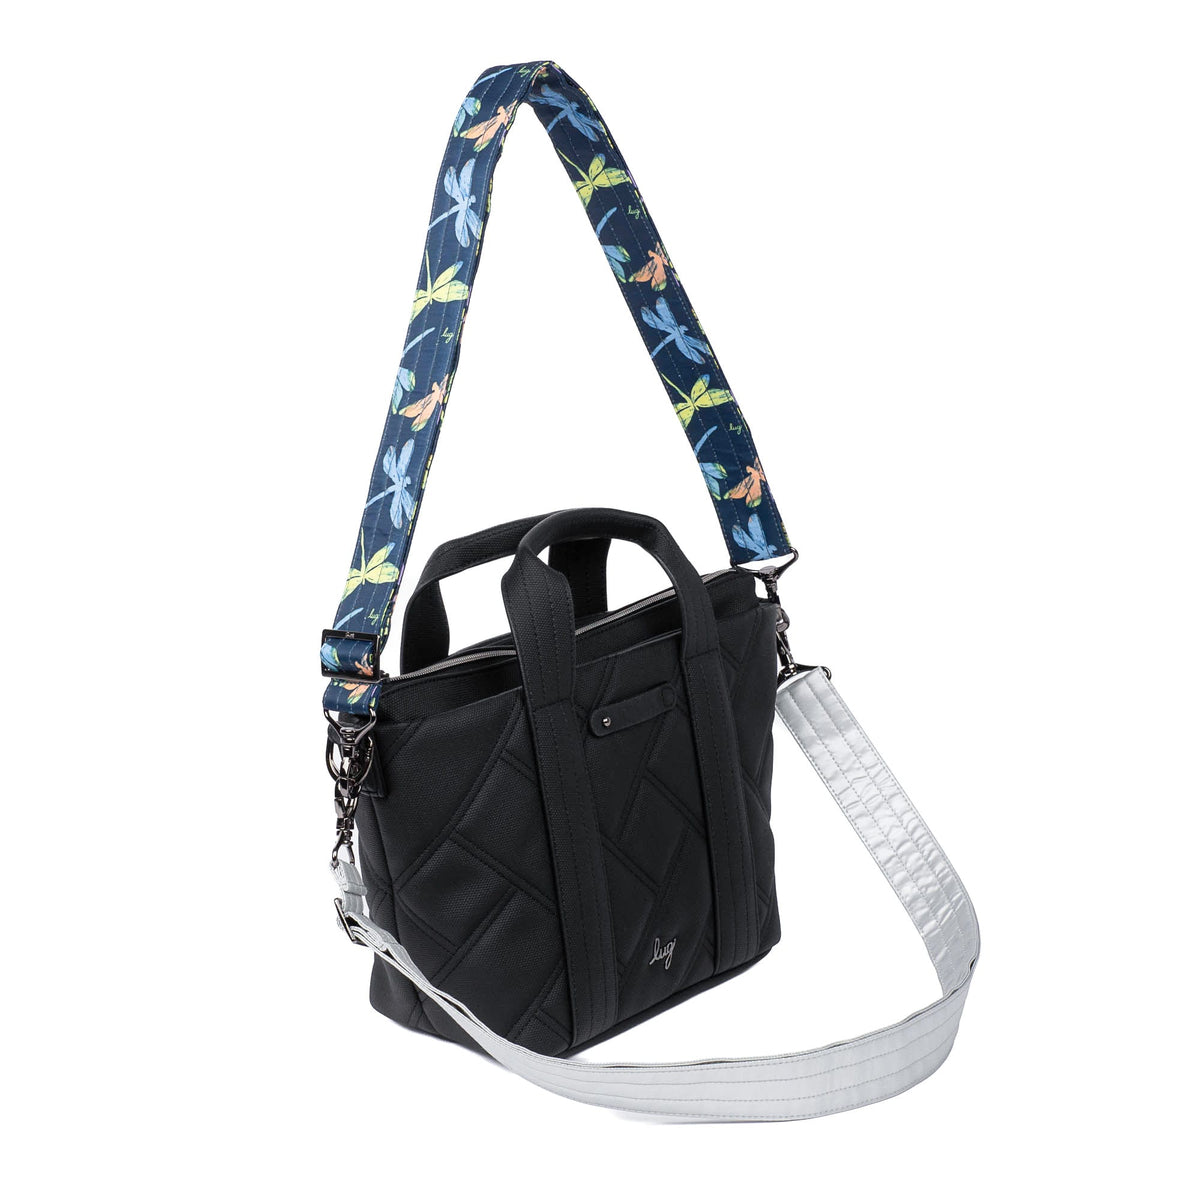 Adjustable Bag Straps - 1